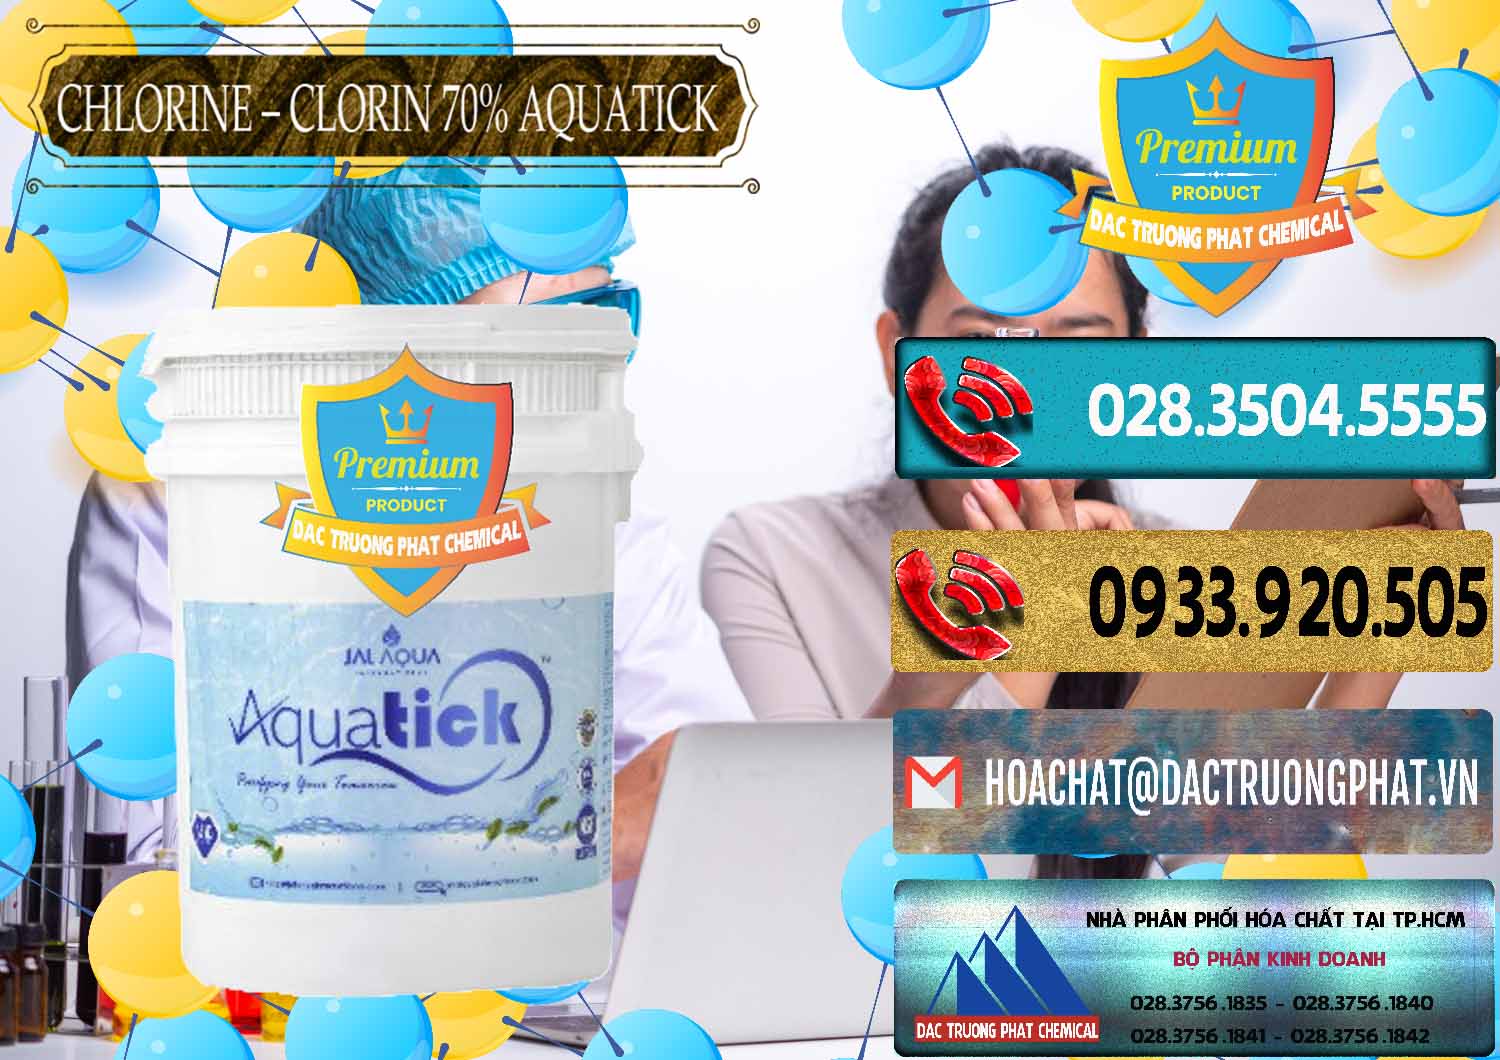 Công ty bán và phân phối Chlorine – Clorin 70% Aquatick Thùng Cao Jal Aqua Ấn Độ India - 0237 - Công ty chuyên kinh doanh và phân phối hóa chất tại TP.HCM - hoachatdetnhuom.com